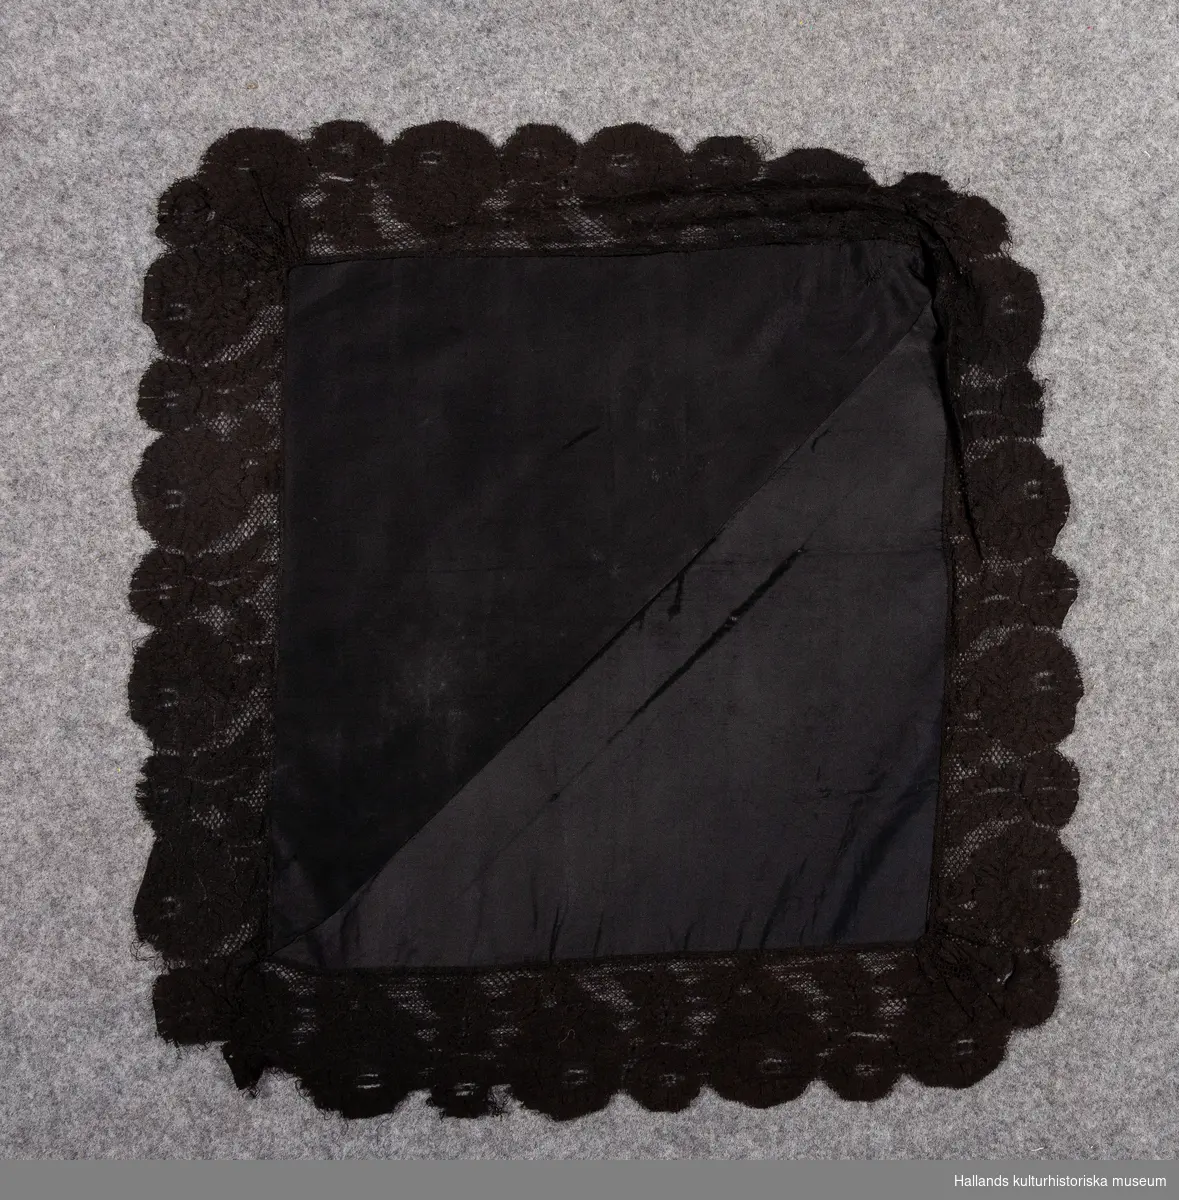 Svart sidensjal, huvudduk av slätvävd rips ihopsydd av två trekantiga bitar. Kantad med bred svart silkesspets.